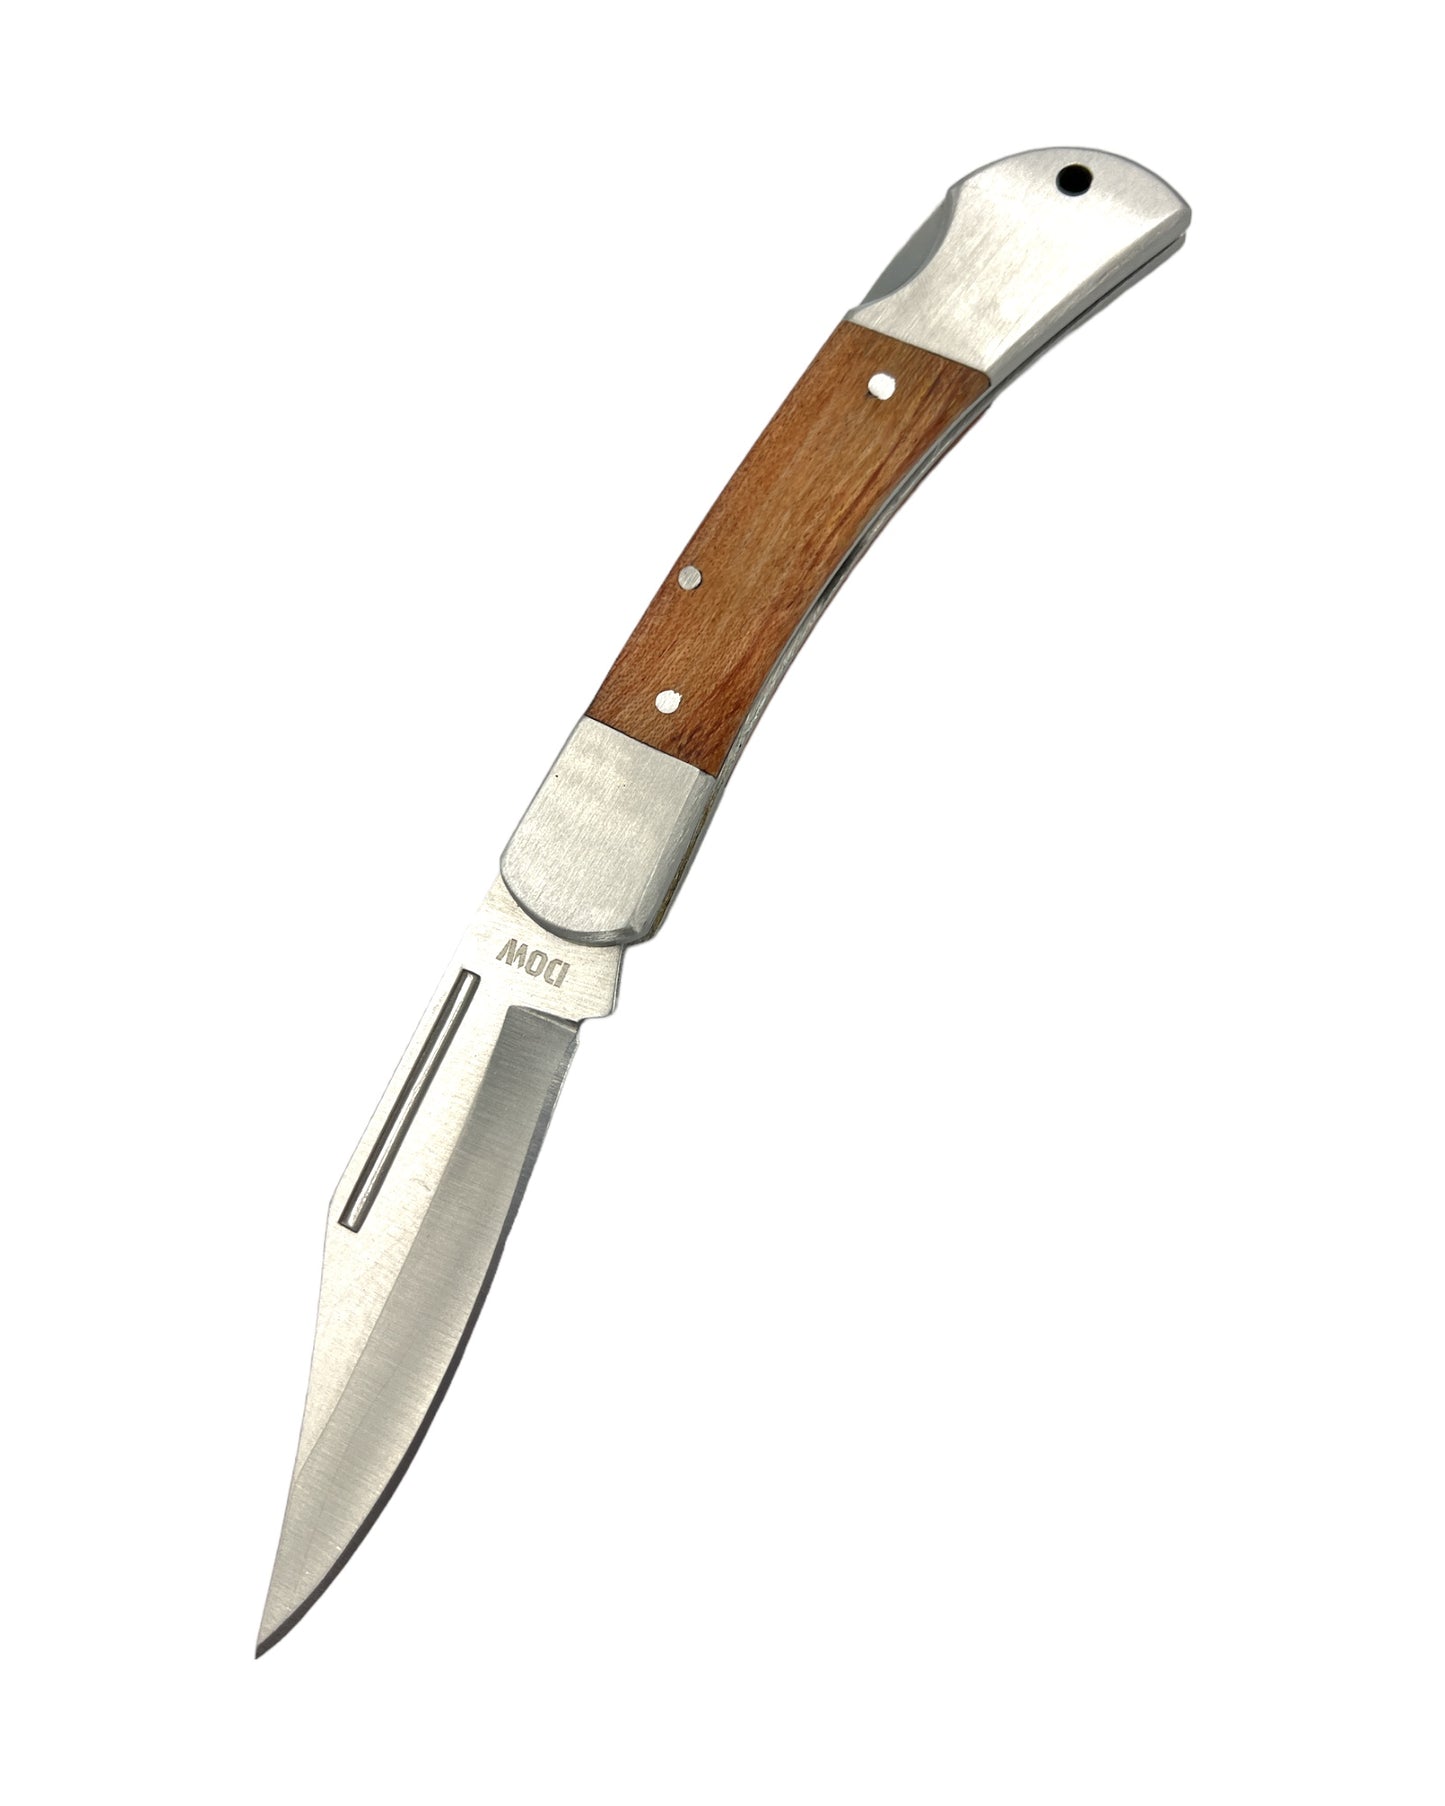 Rosewood Trapper Pocket Knife - 3.5inch (8cm) Blade